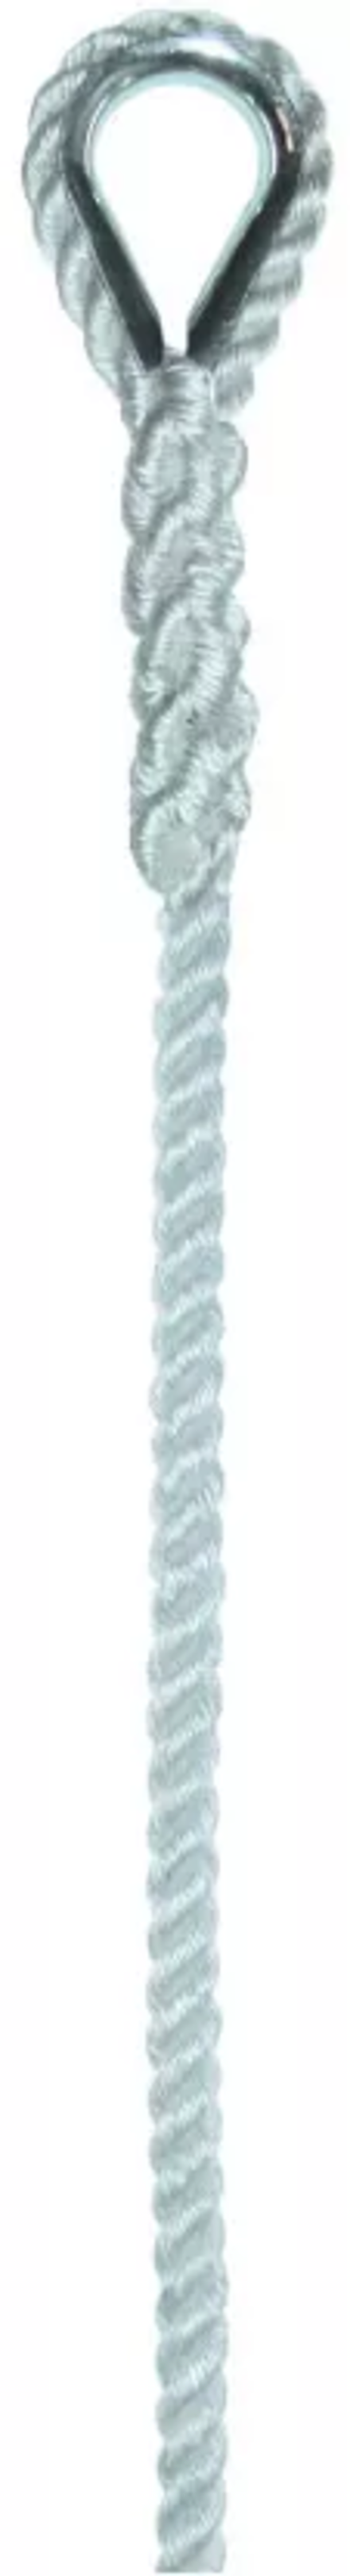 Élingue corde d.8 mm 1 boucle cossée cmu 100 kg long 1 m LEVAC - 4407E